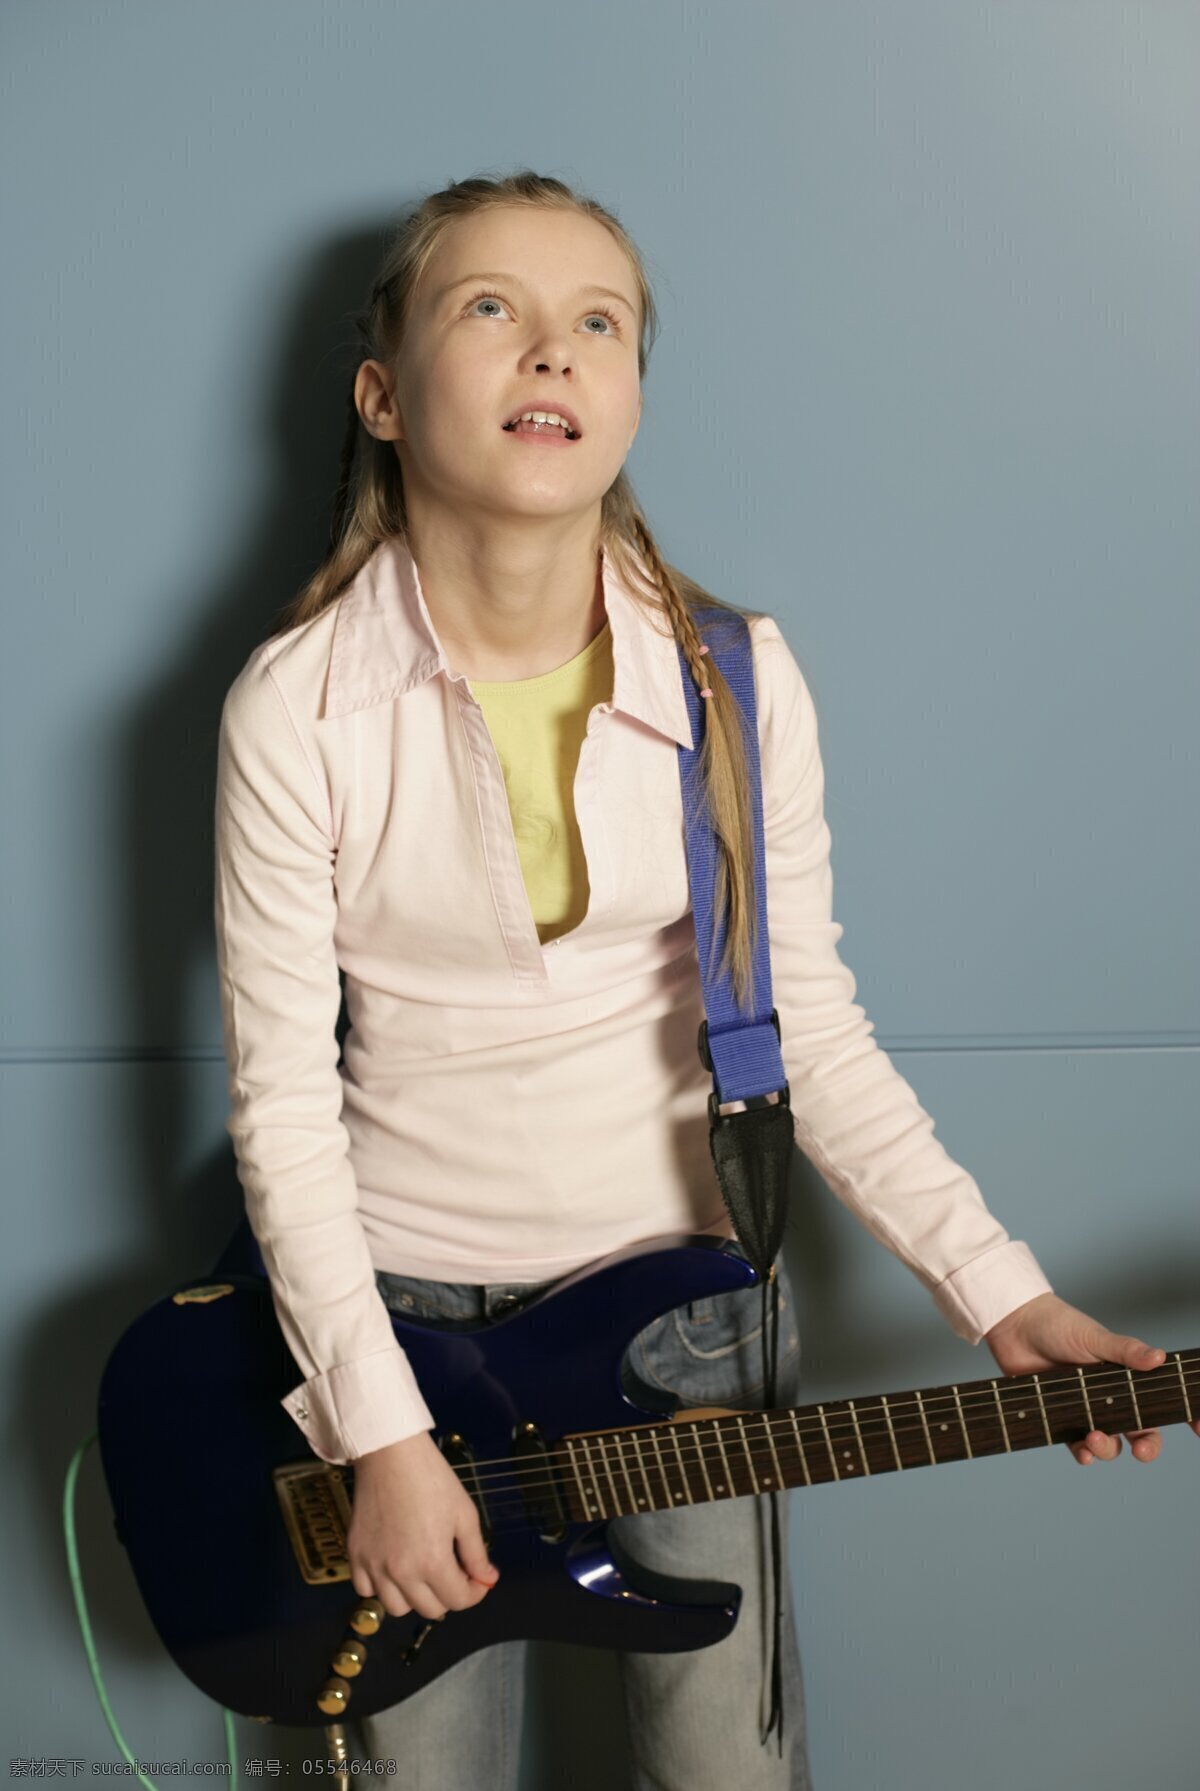 弹 吉他 女孩 外国女孩 乐器 弹吉他 动作 生活人物 人物图片